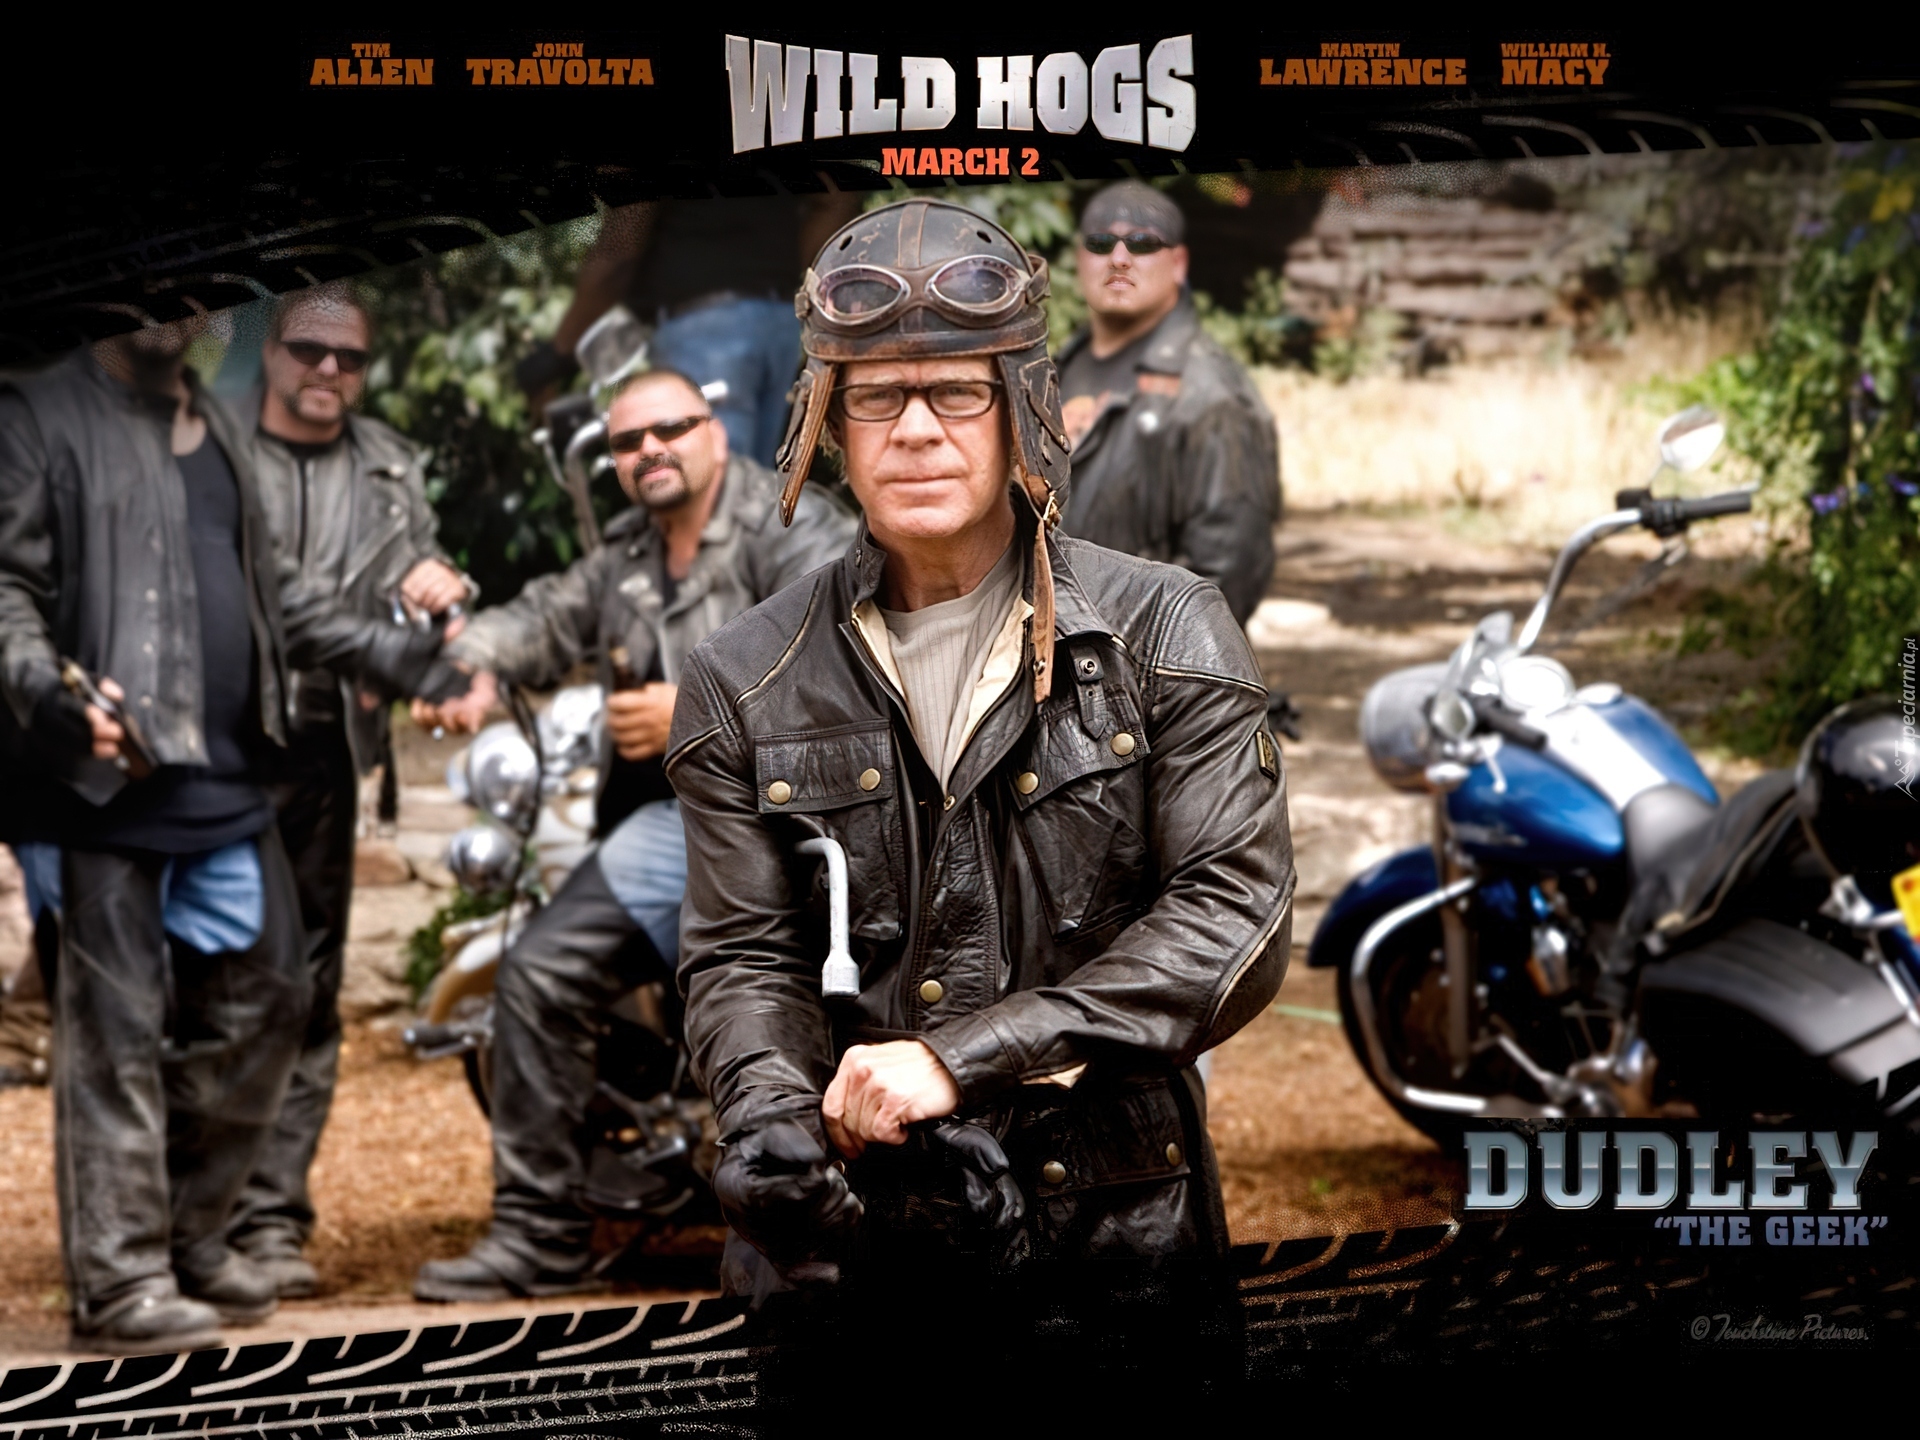 William H. Macy, motocykliści, Wild Hogs